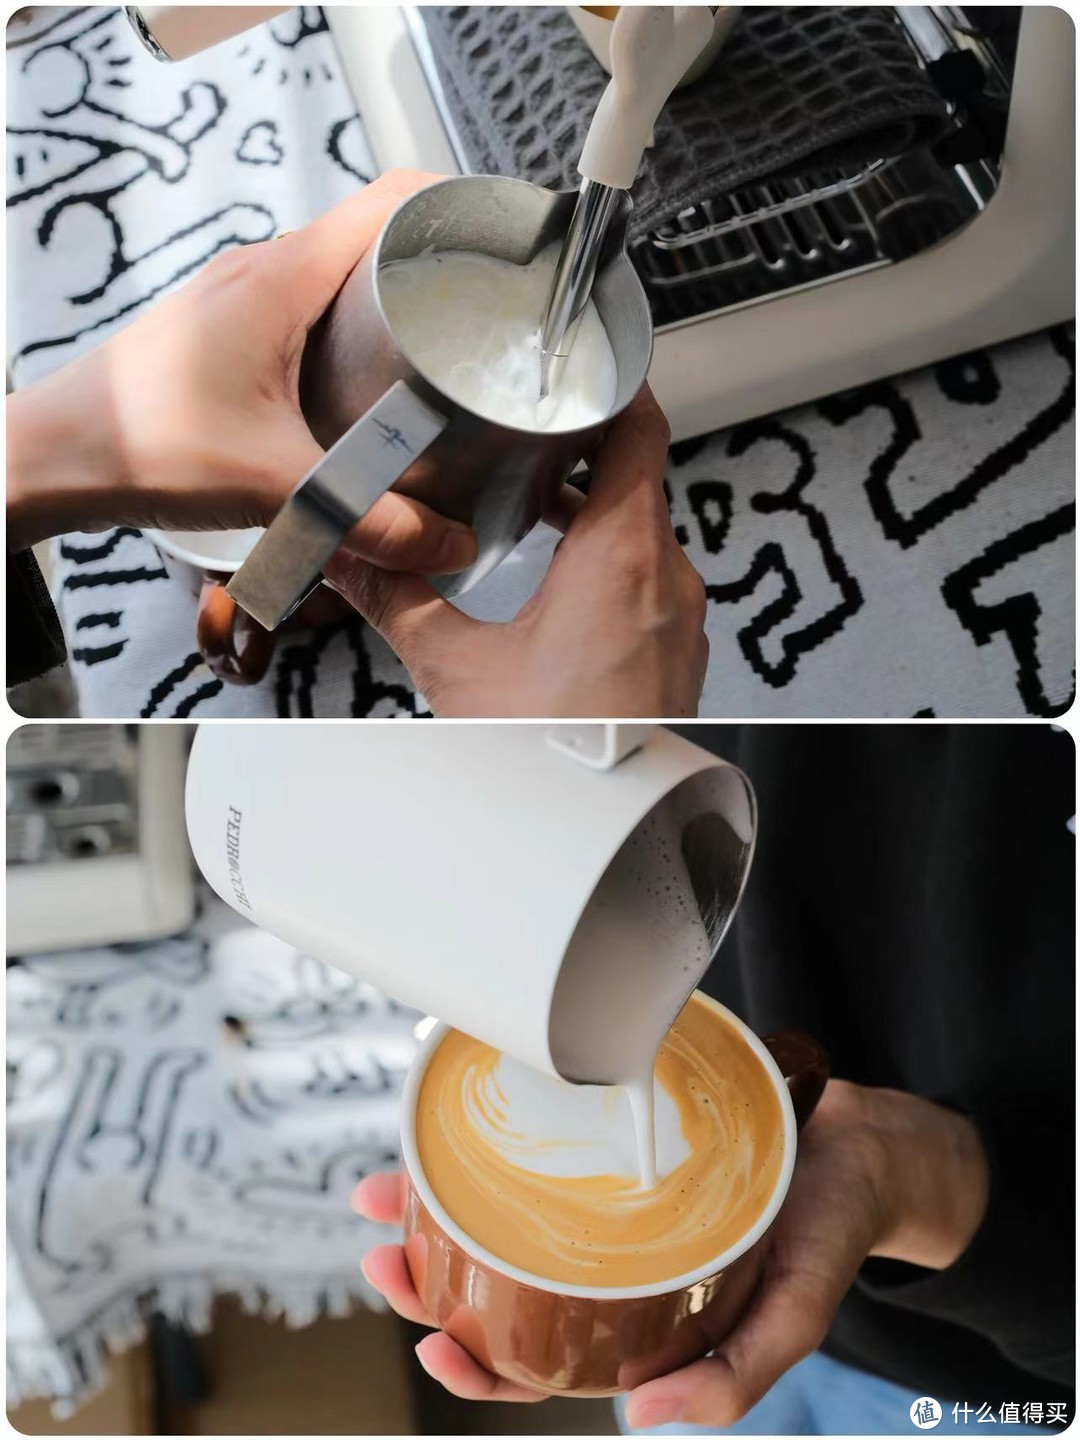 三步让咖啡小白轻松制作出堪比专业出品的优质咖啡——佩罗奇S1一体式半自动咖啡机上手指南